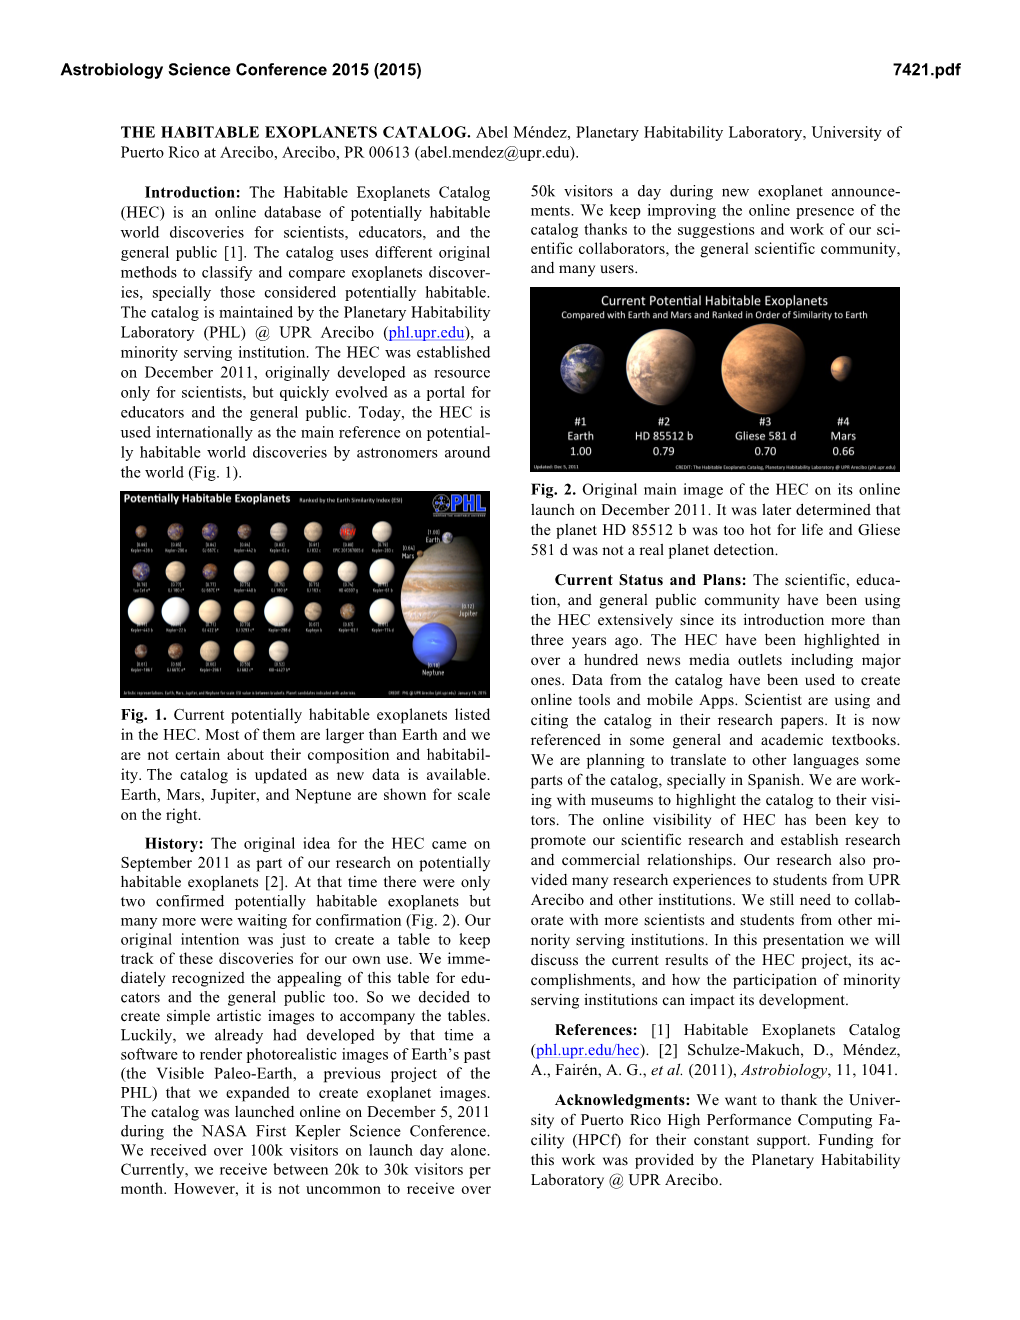 THE HABITABLE EXOPLANETS CATALOG. Abel Méndez, Planetary Habitability Laboratory, University of Puerto Rico at Arecibo, Arecibo, PR 00613 (Abel.Mendez@Upr.Edu)